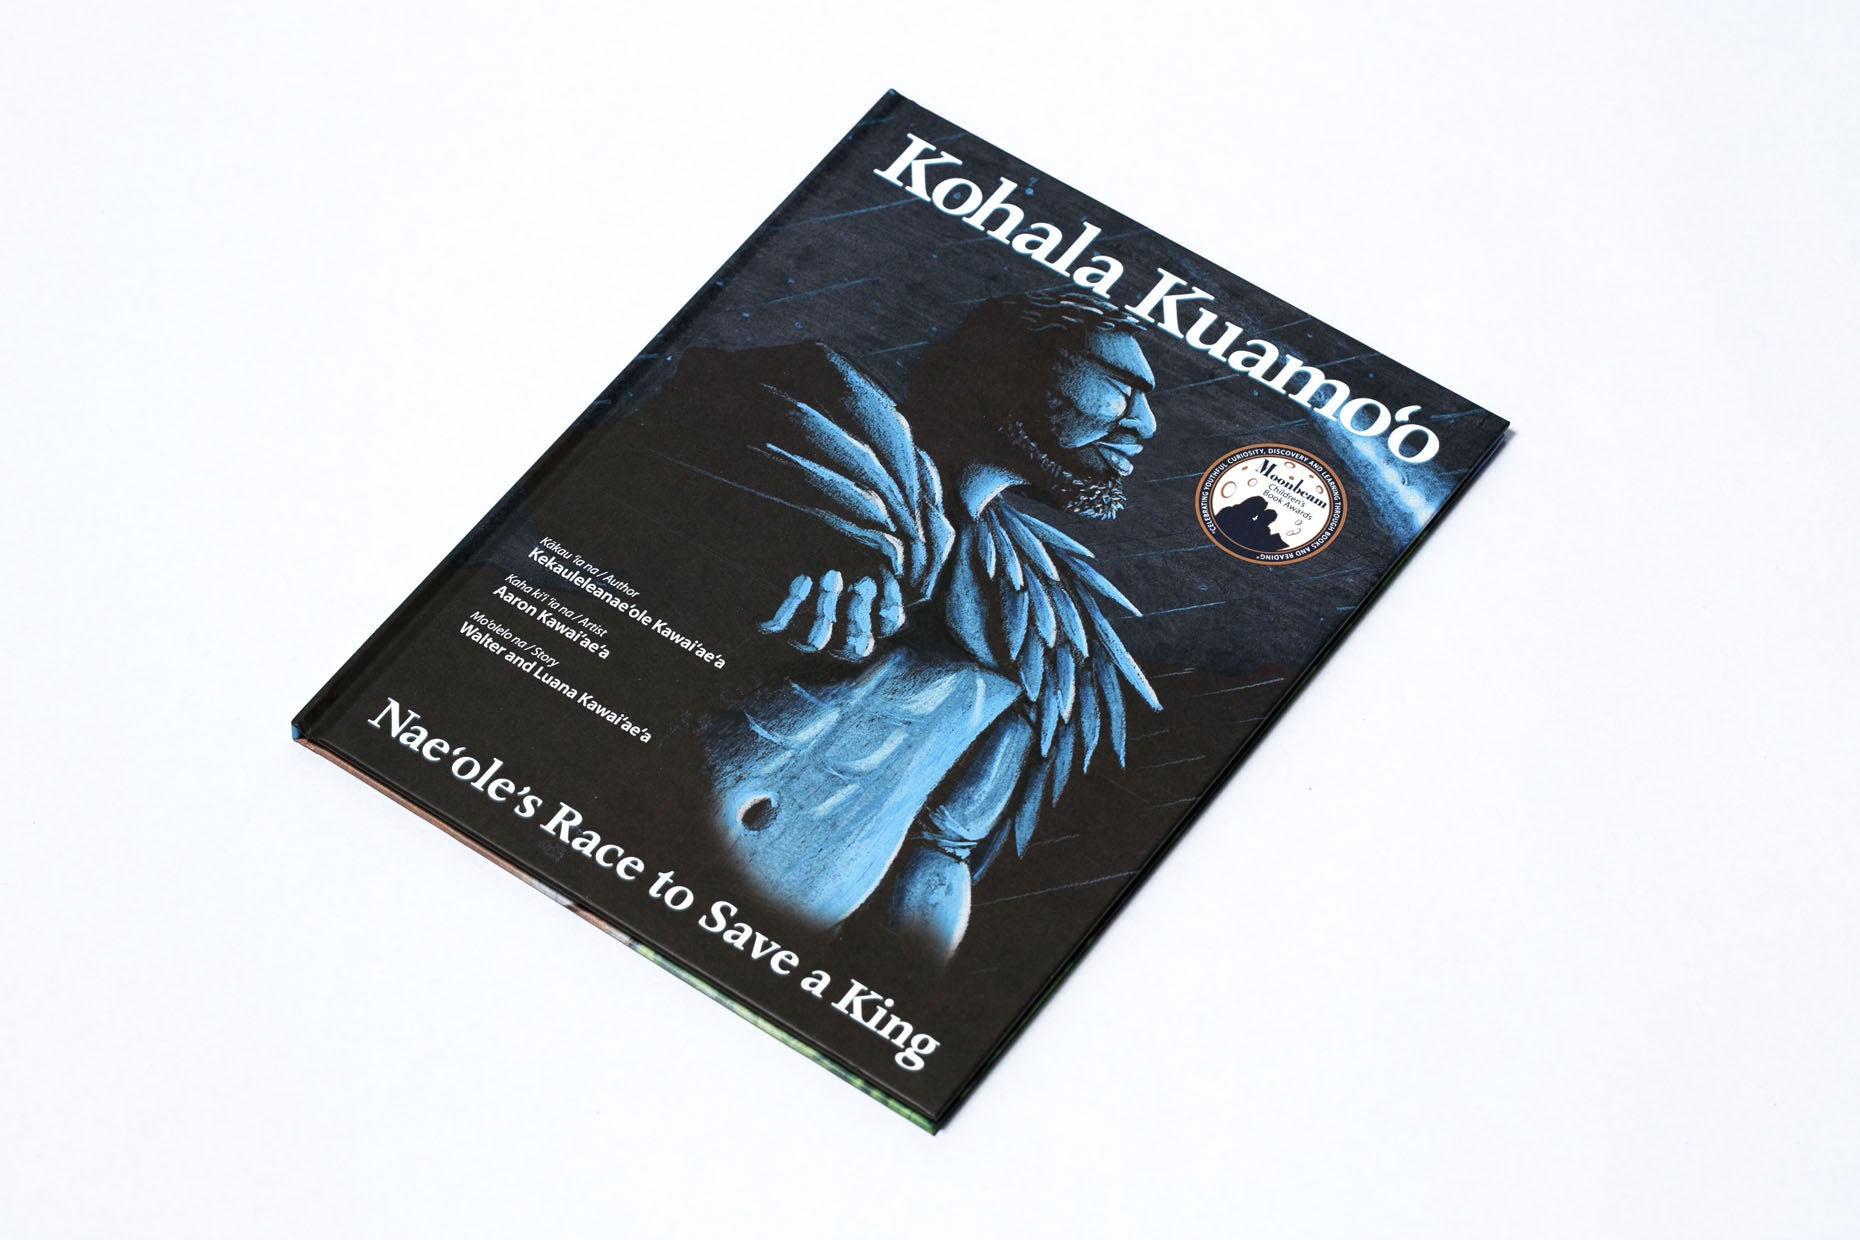 Kohala Kuamo‘o: Nae‘ole’s Race to Save a King